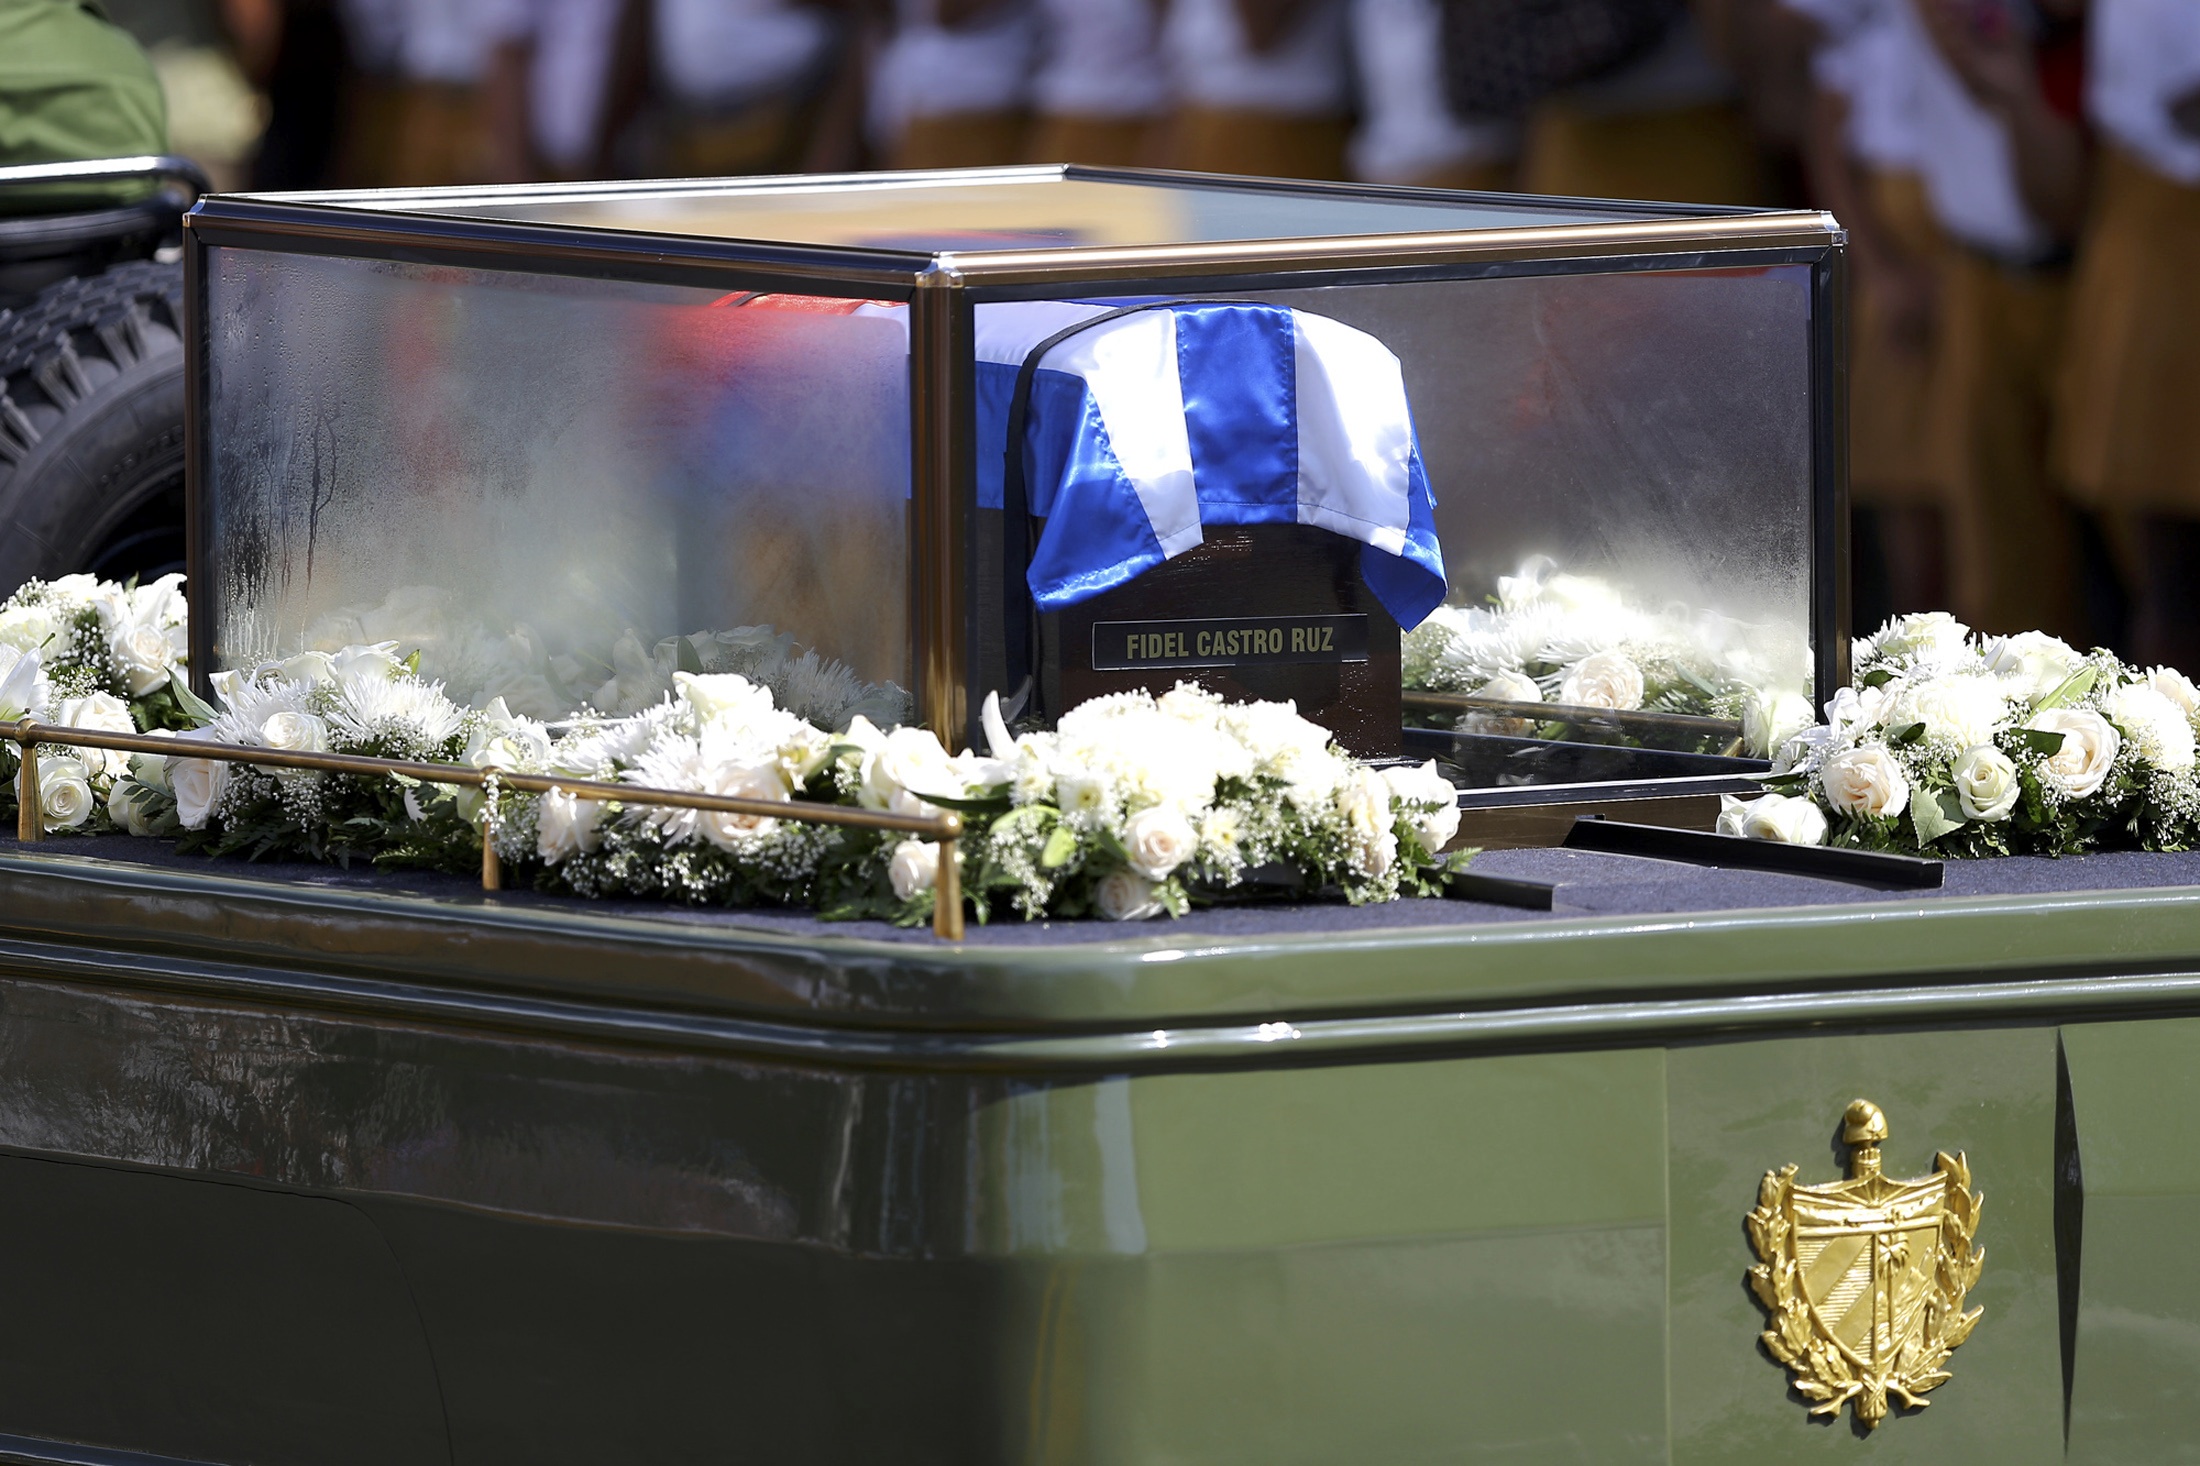 EN FOTOS: Carroza fúnebre con restos de Fidel Castro se accidentó